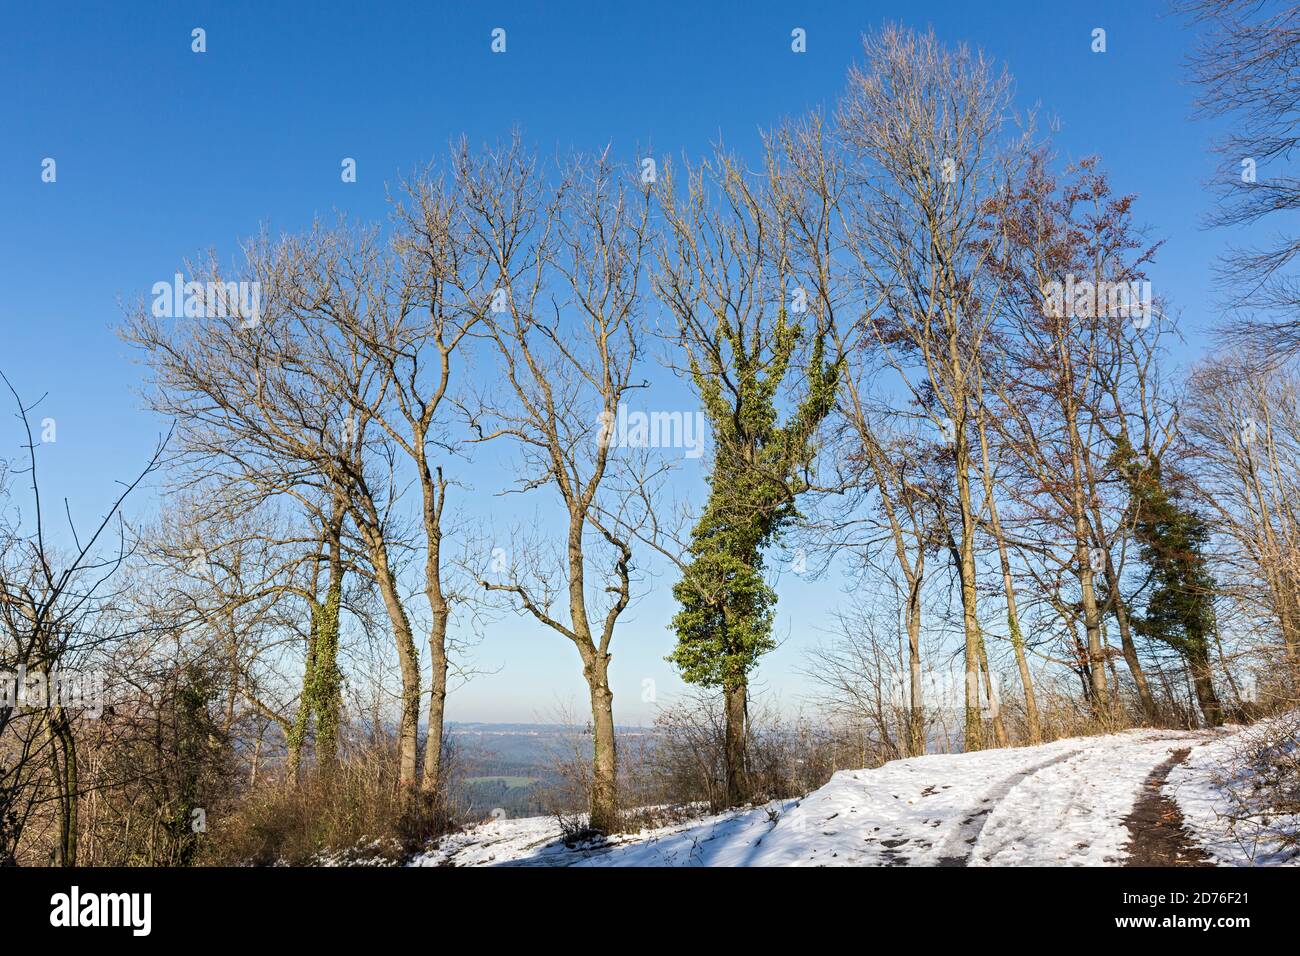 Stauferland, Landschaft, Schnee, Fahrweg, Baumreihe Stock Photo